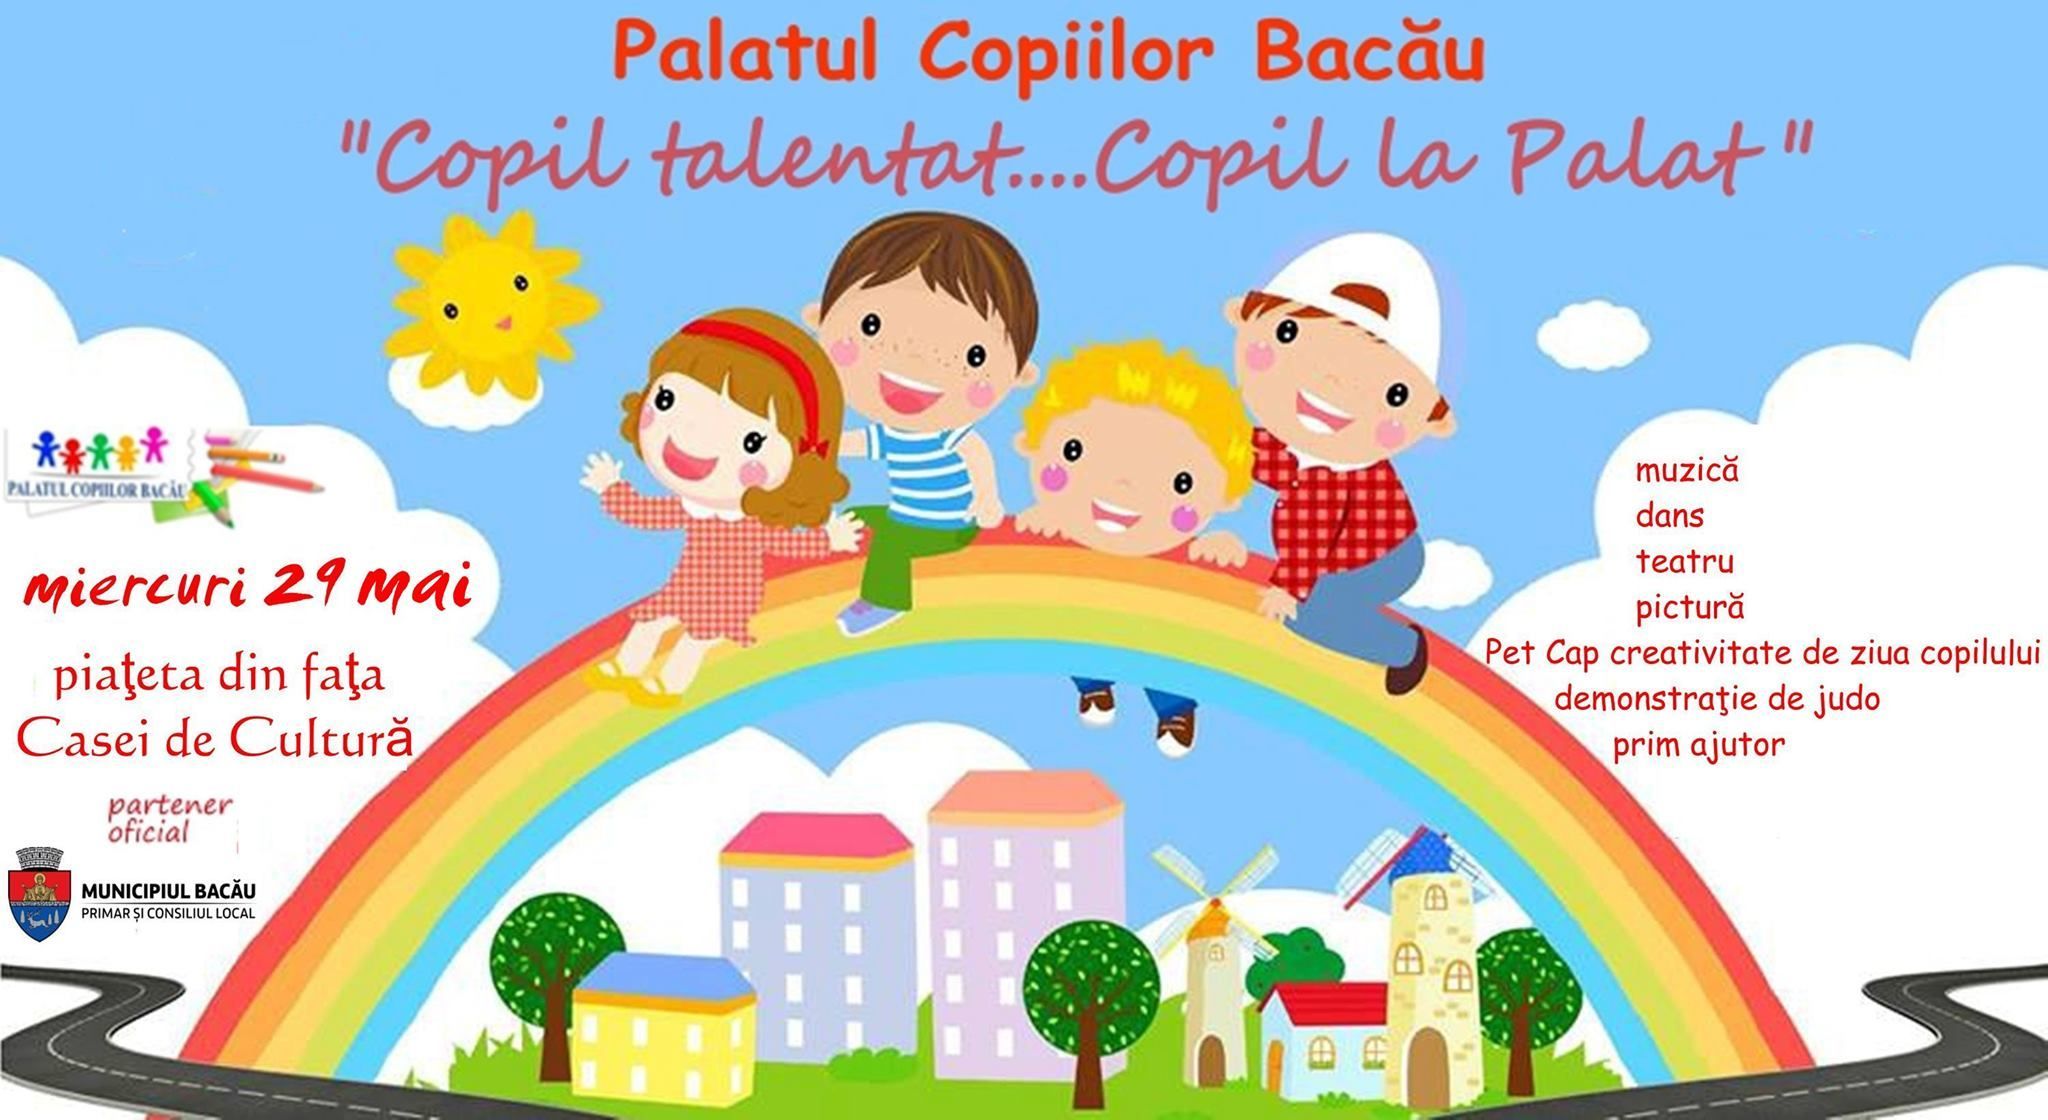 Șapte ore de distracție cu Palatul Copiilor Bacău, în centrul orașului